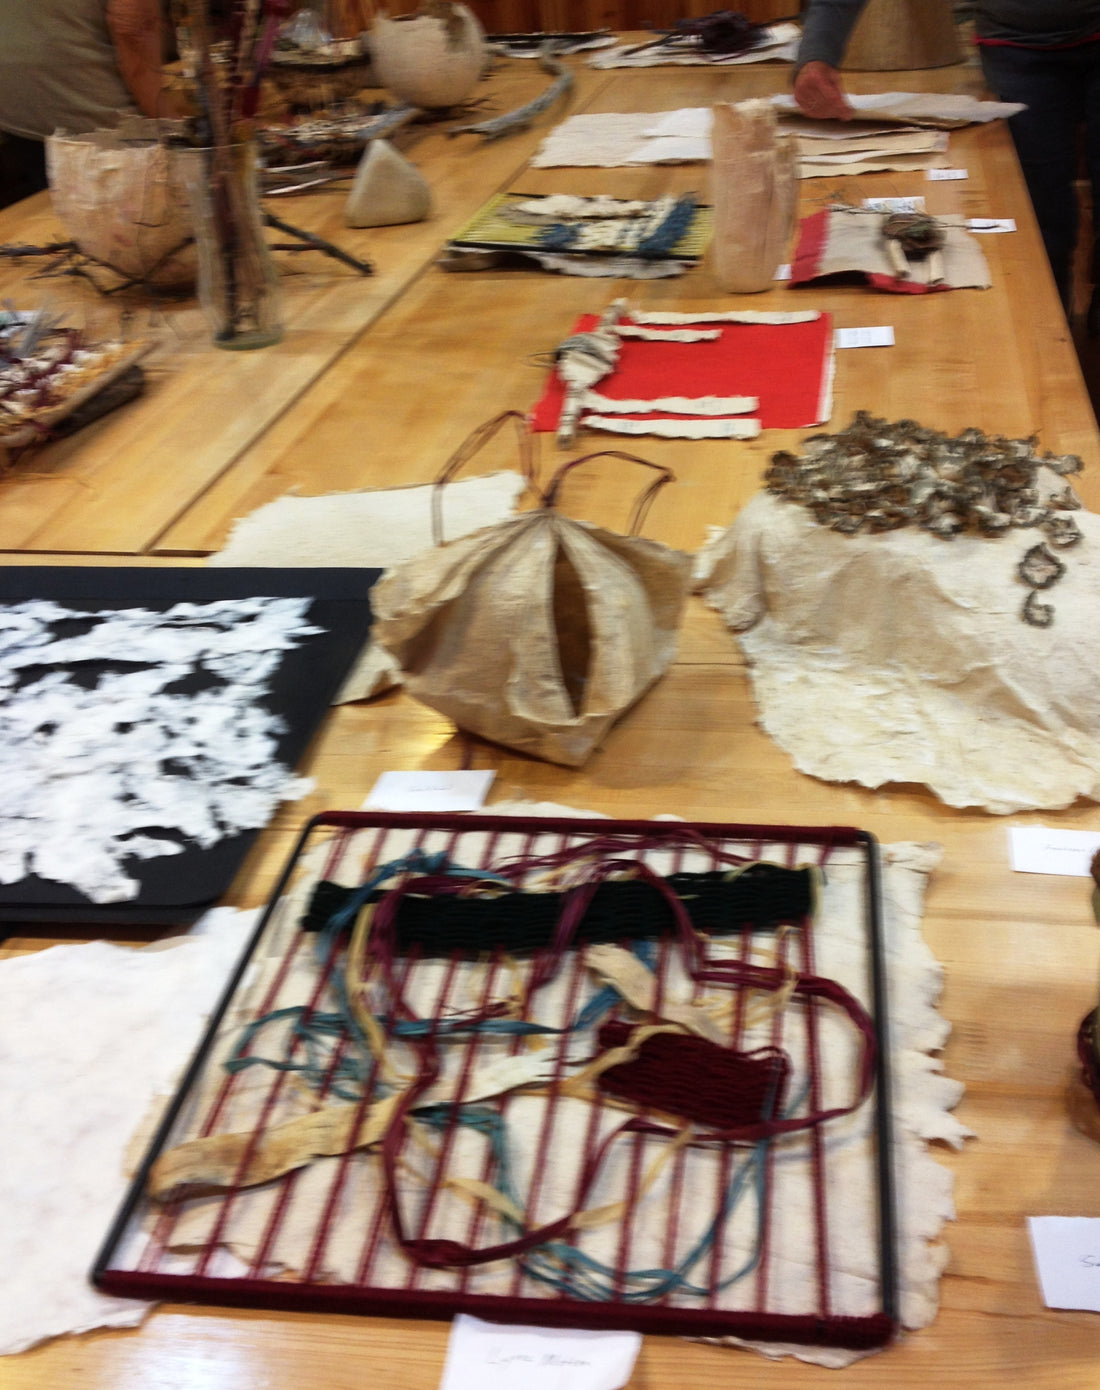 2017 Clearing Folk Art School class-"Weaving in a Paper maker's world"